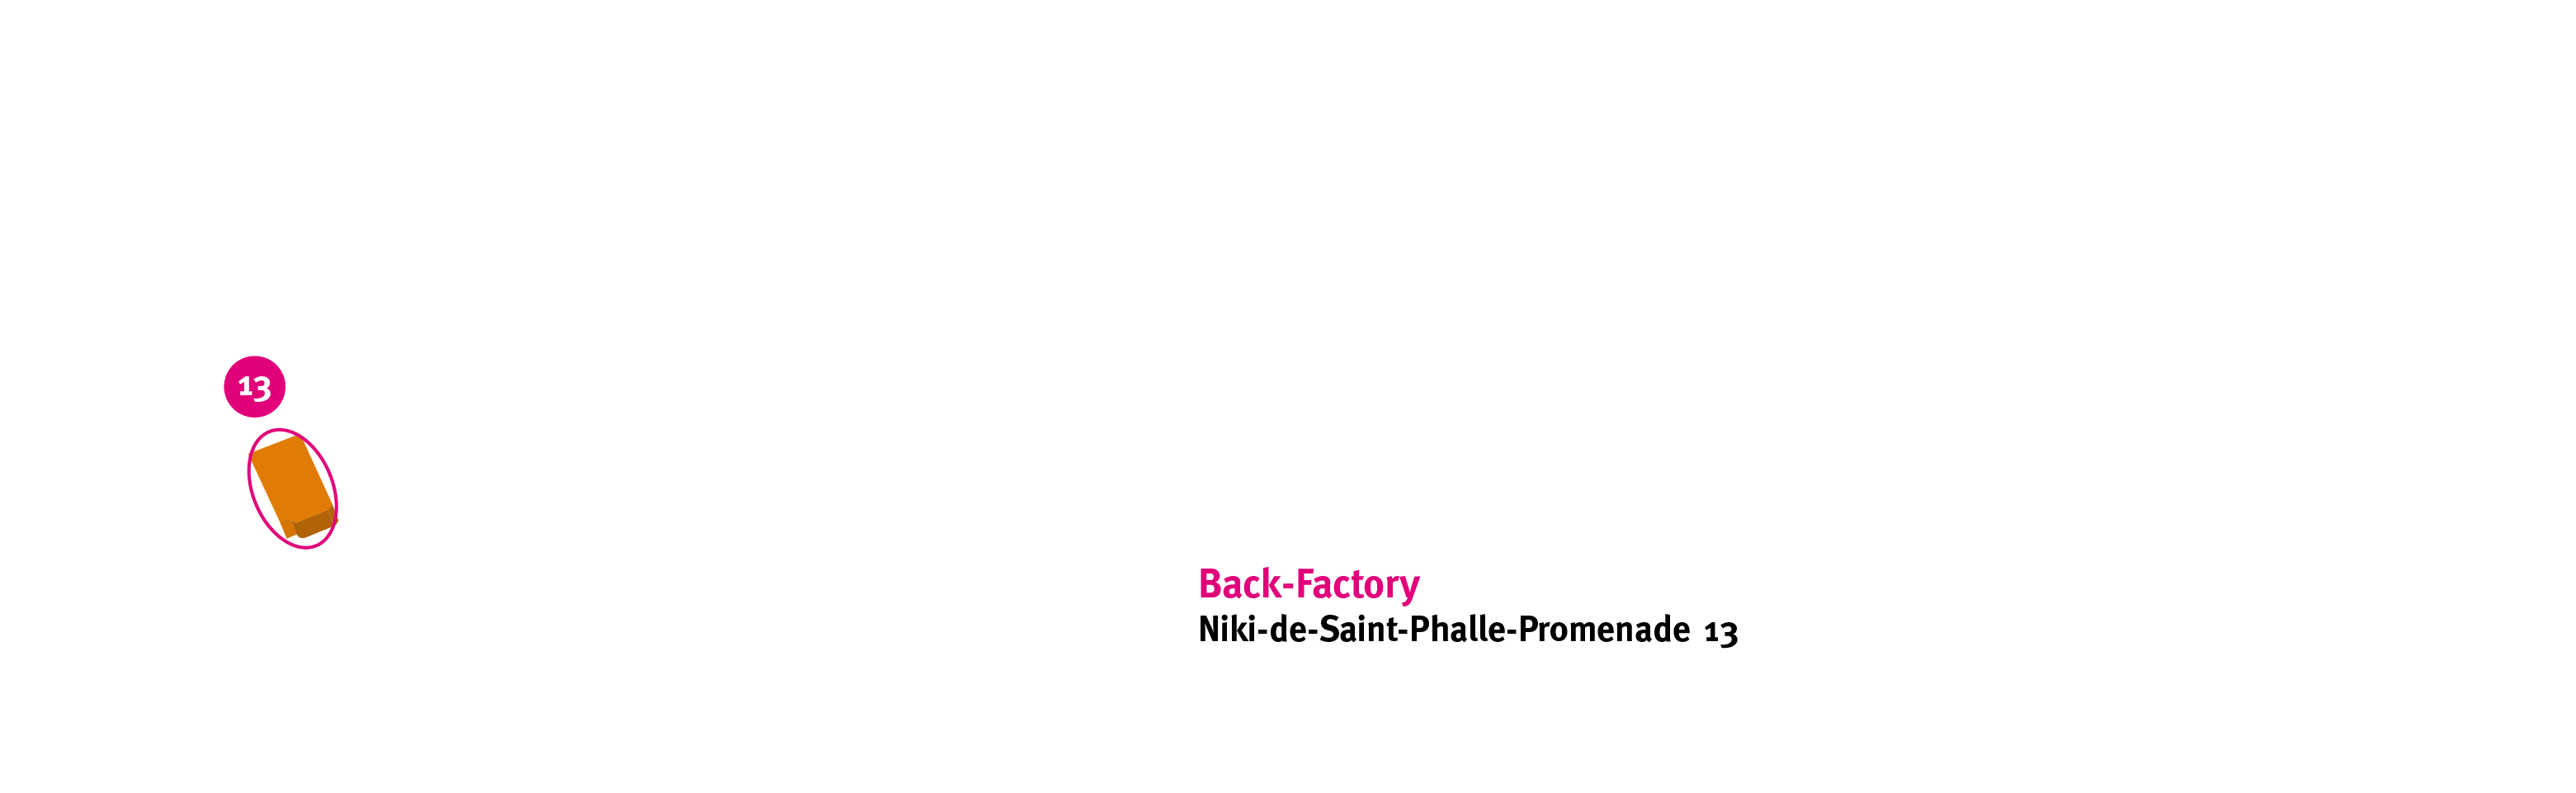 backfactorykroepke